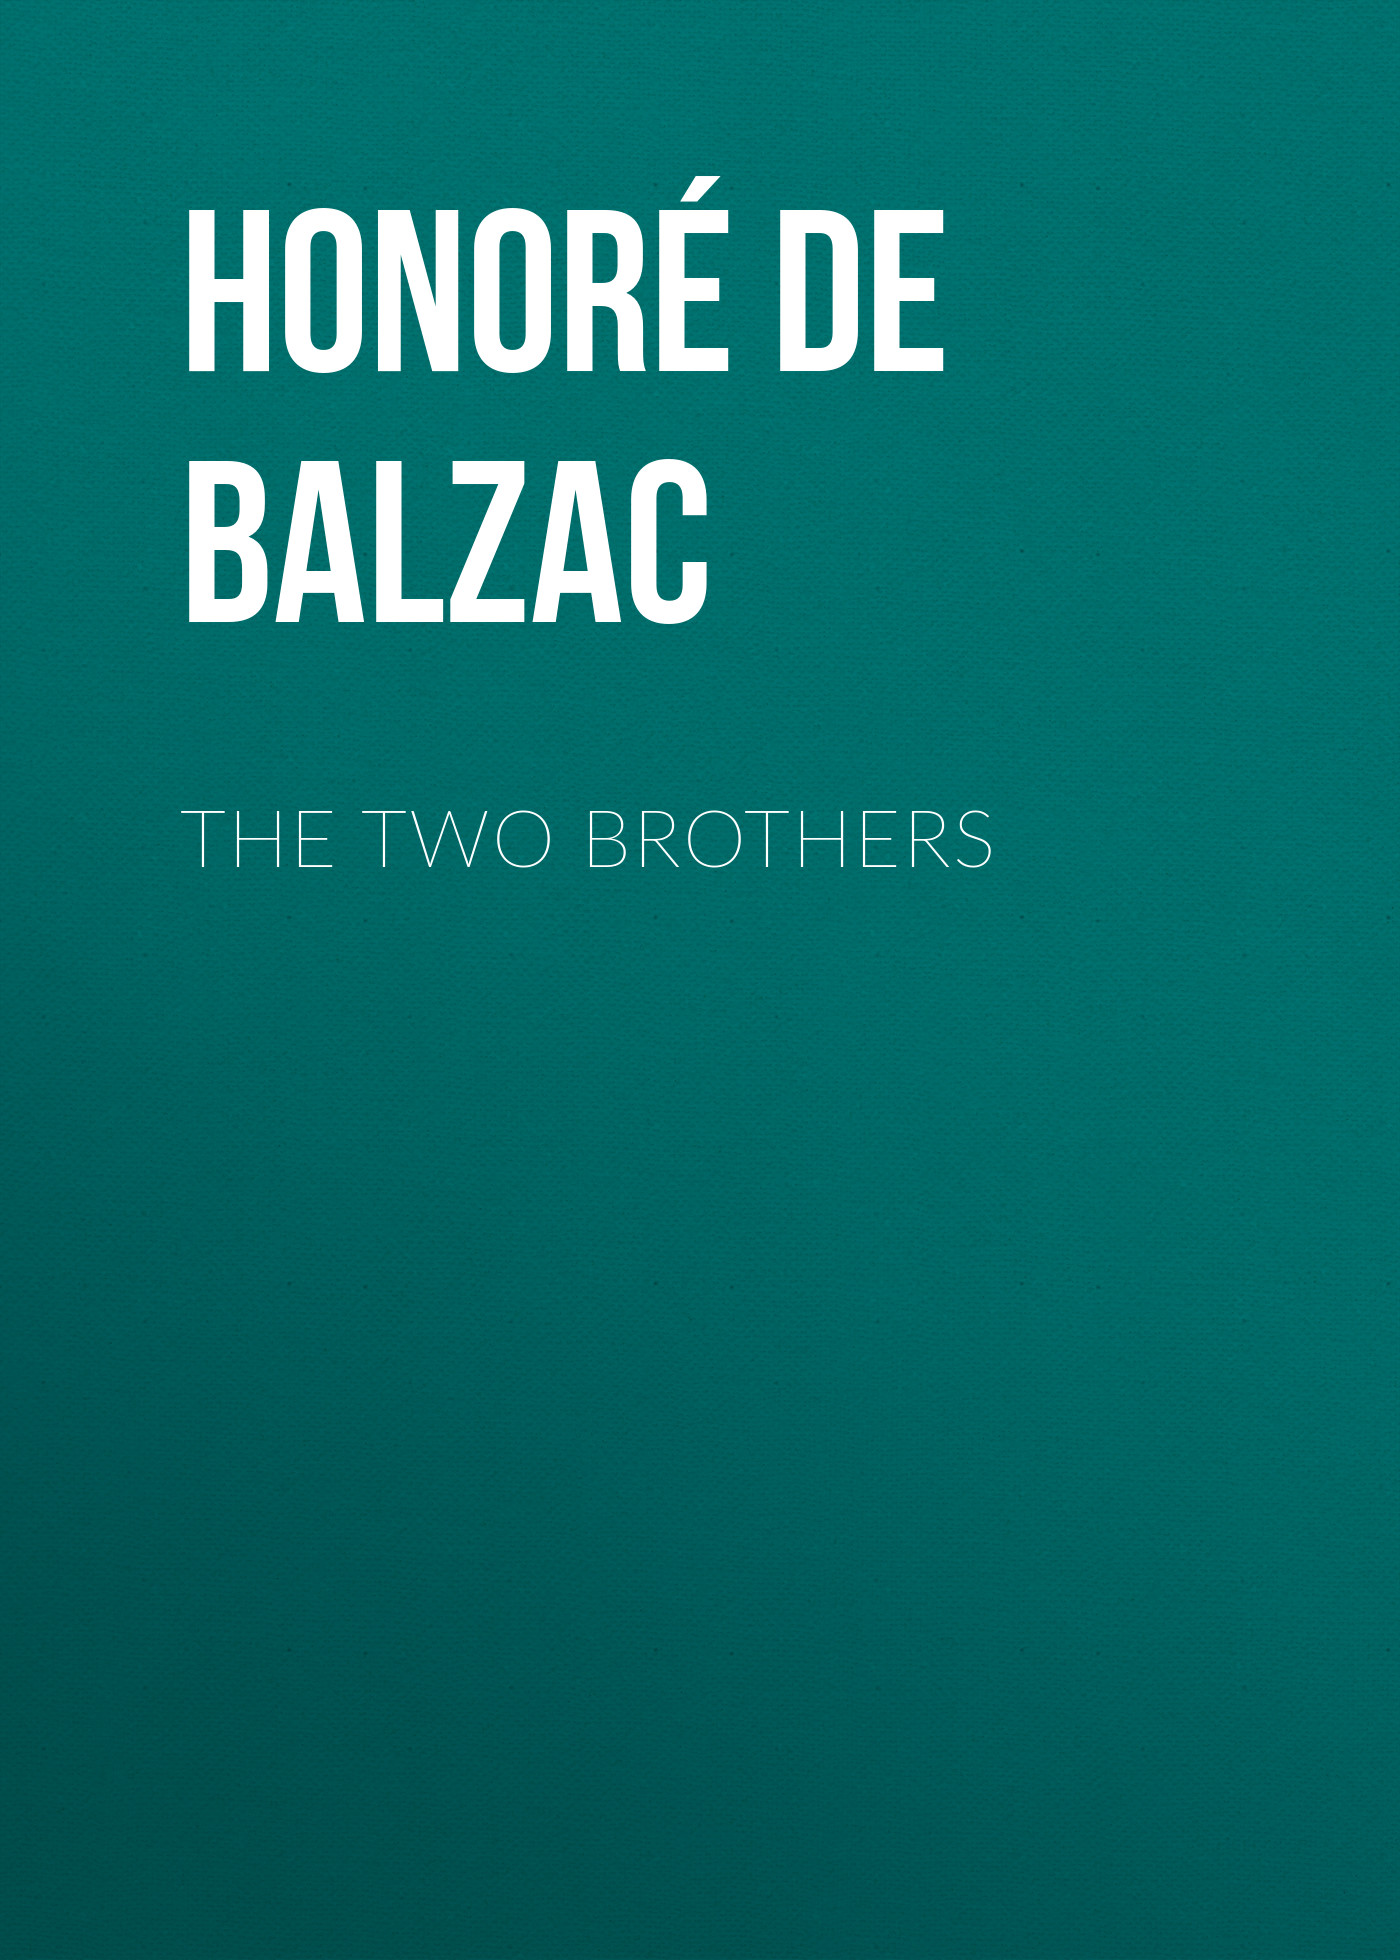 Книга The Two Brothers из серии , созданная Honoré Balzac, может относится к жанру Литература 19 века, Зарубежная старинная литература, Зарубежная классика. Стоимость электронной книги The Two Brothers с идентификатором 25020355 составляет 0 руб.